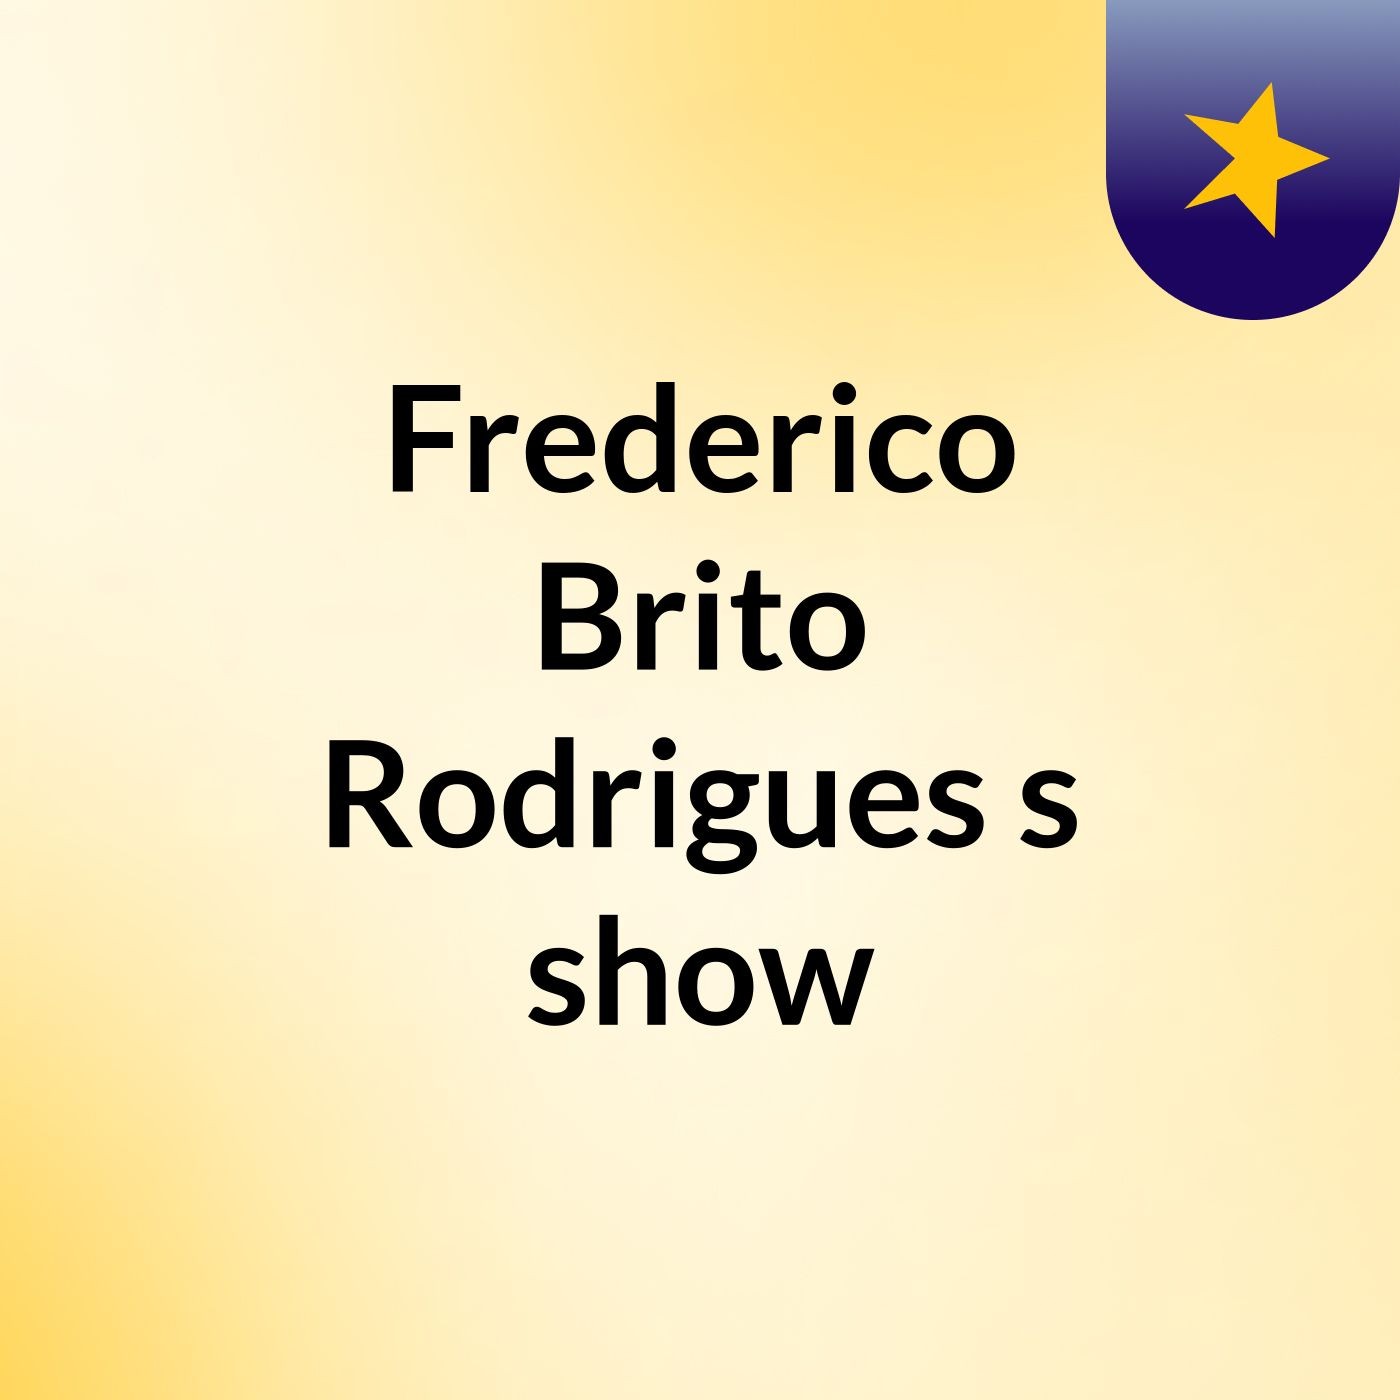 Frederico Brito Rodrigues's show